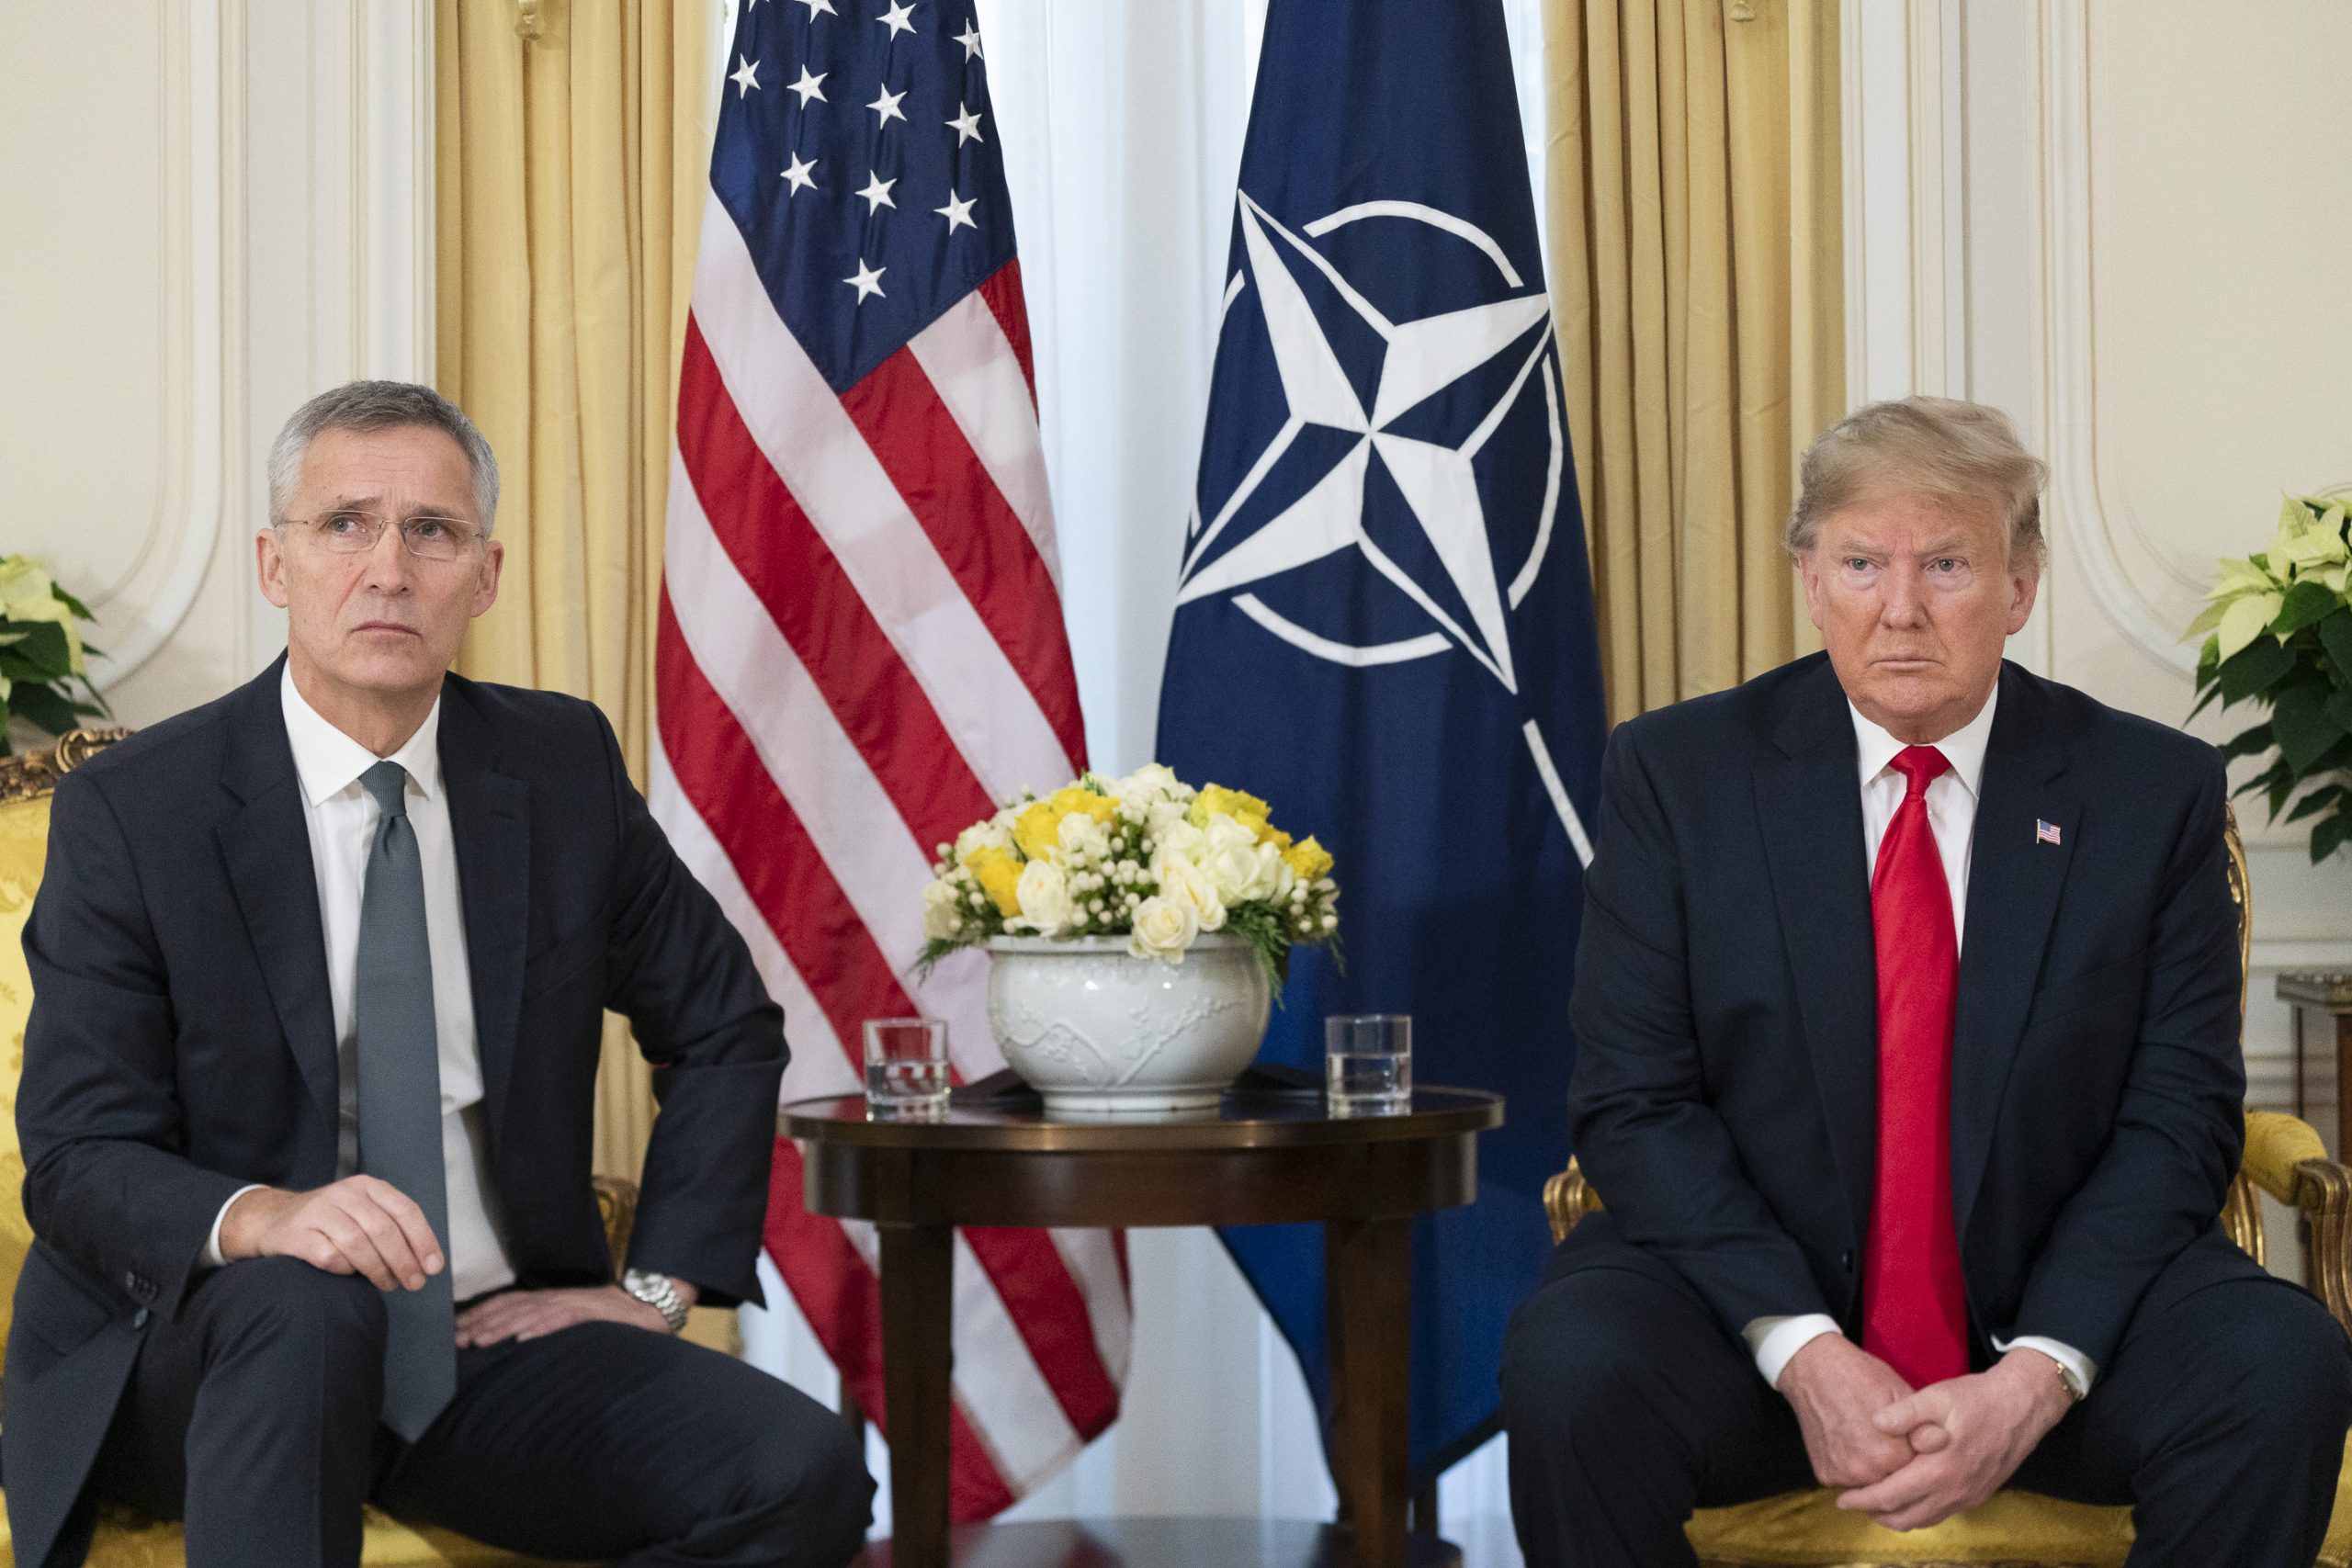 Il Segretario generale NATO uscente, Jens Stoltenberg, con l'ex-presidente americano Donald Trump. Il rapporto tra i due, pur teso, è sempre stato segnato da tentativi di pacificazione.